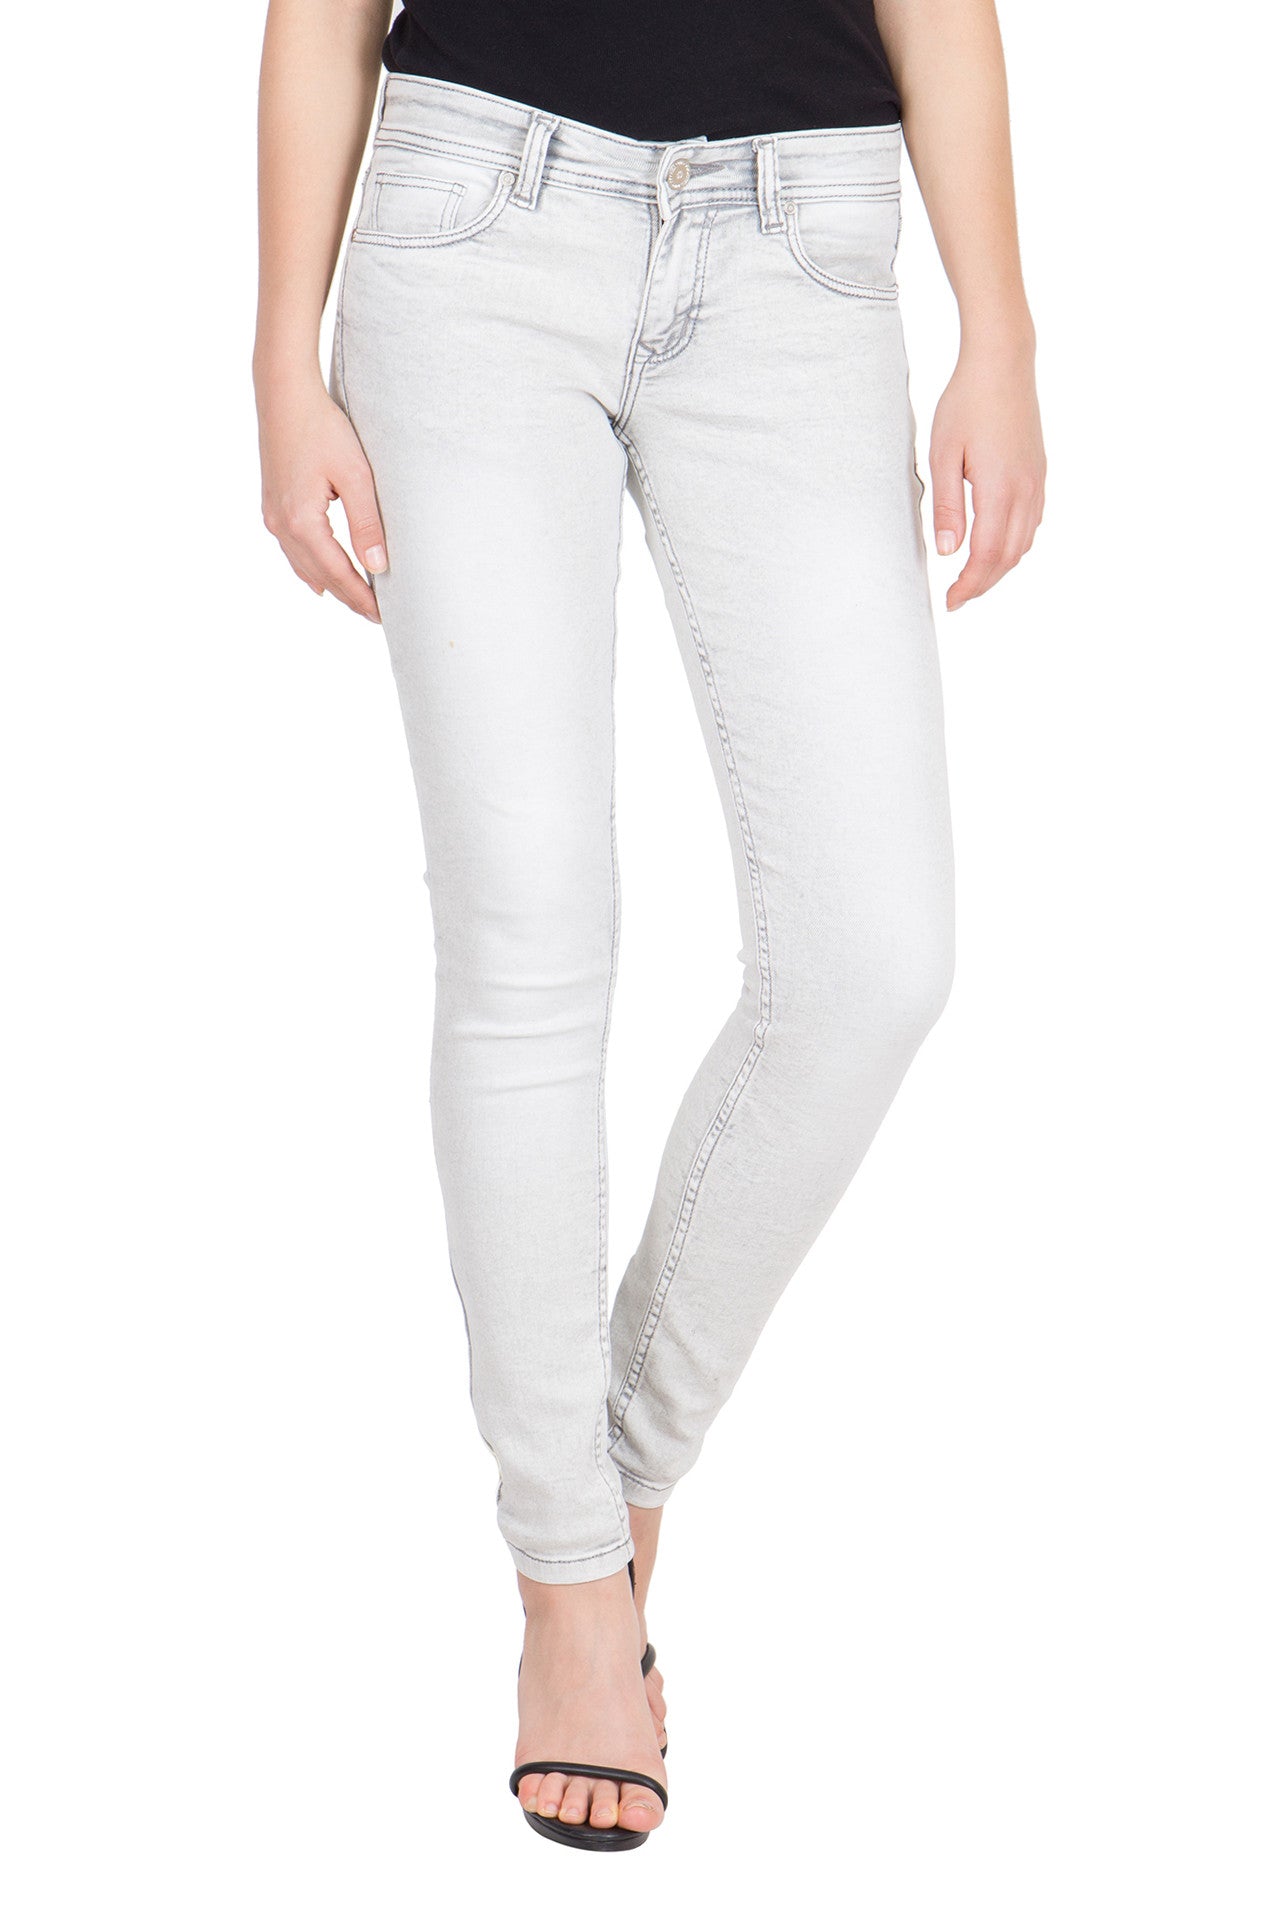 ladies light grey jeans